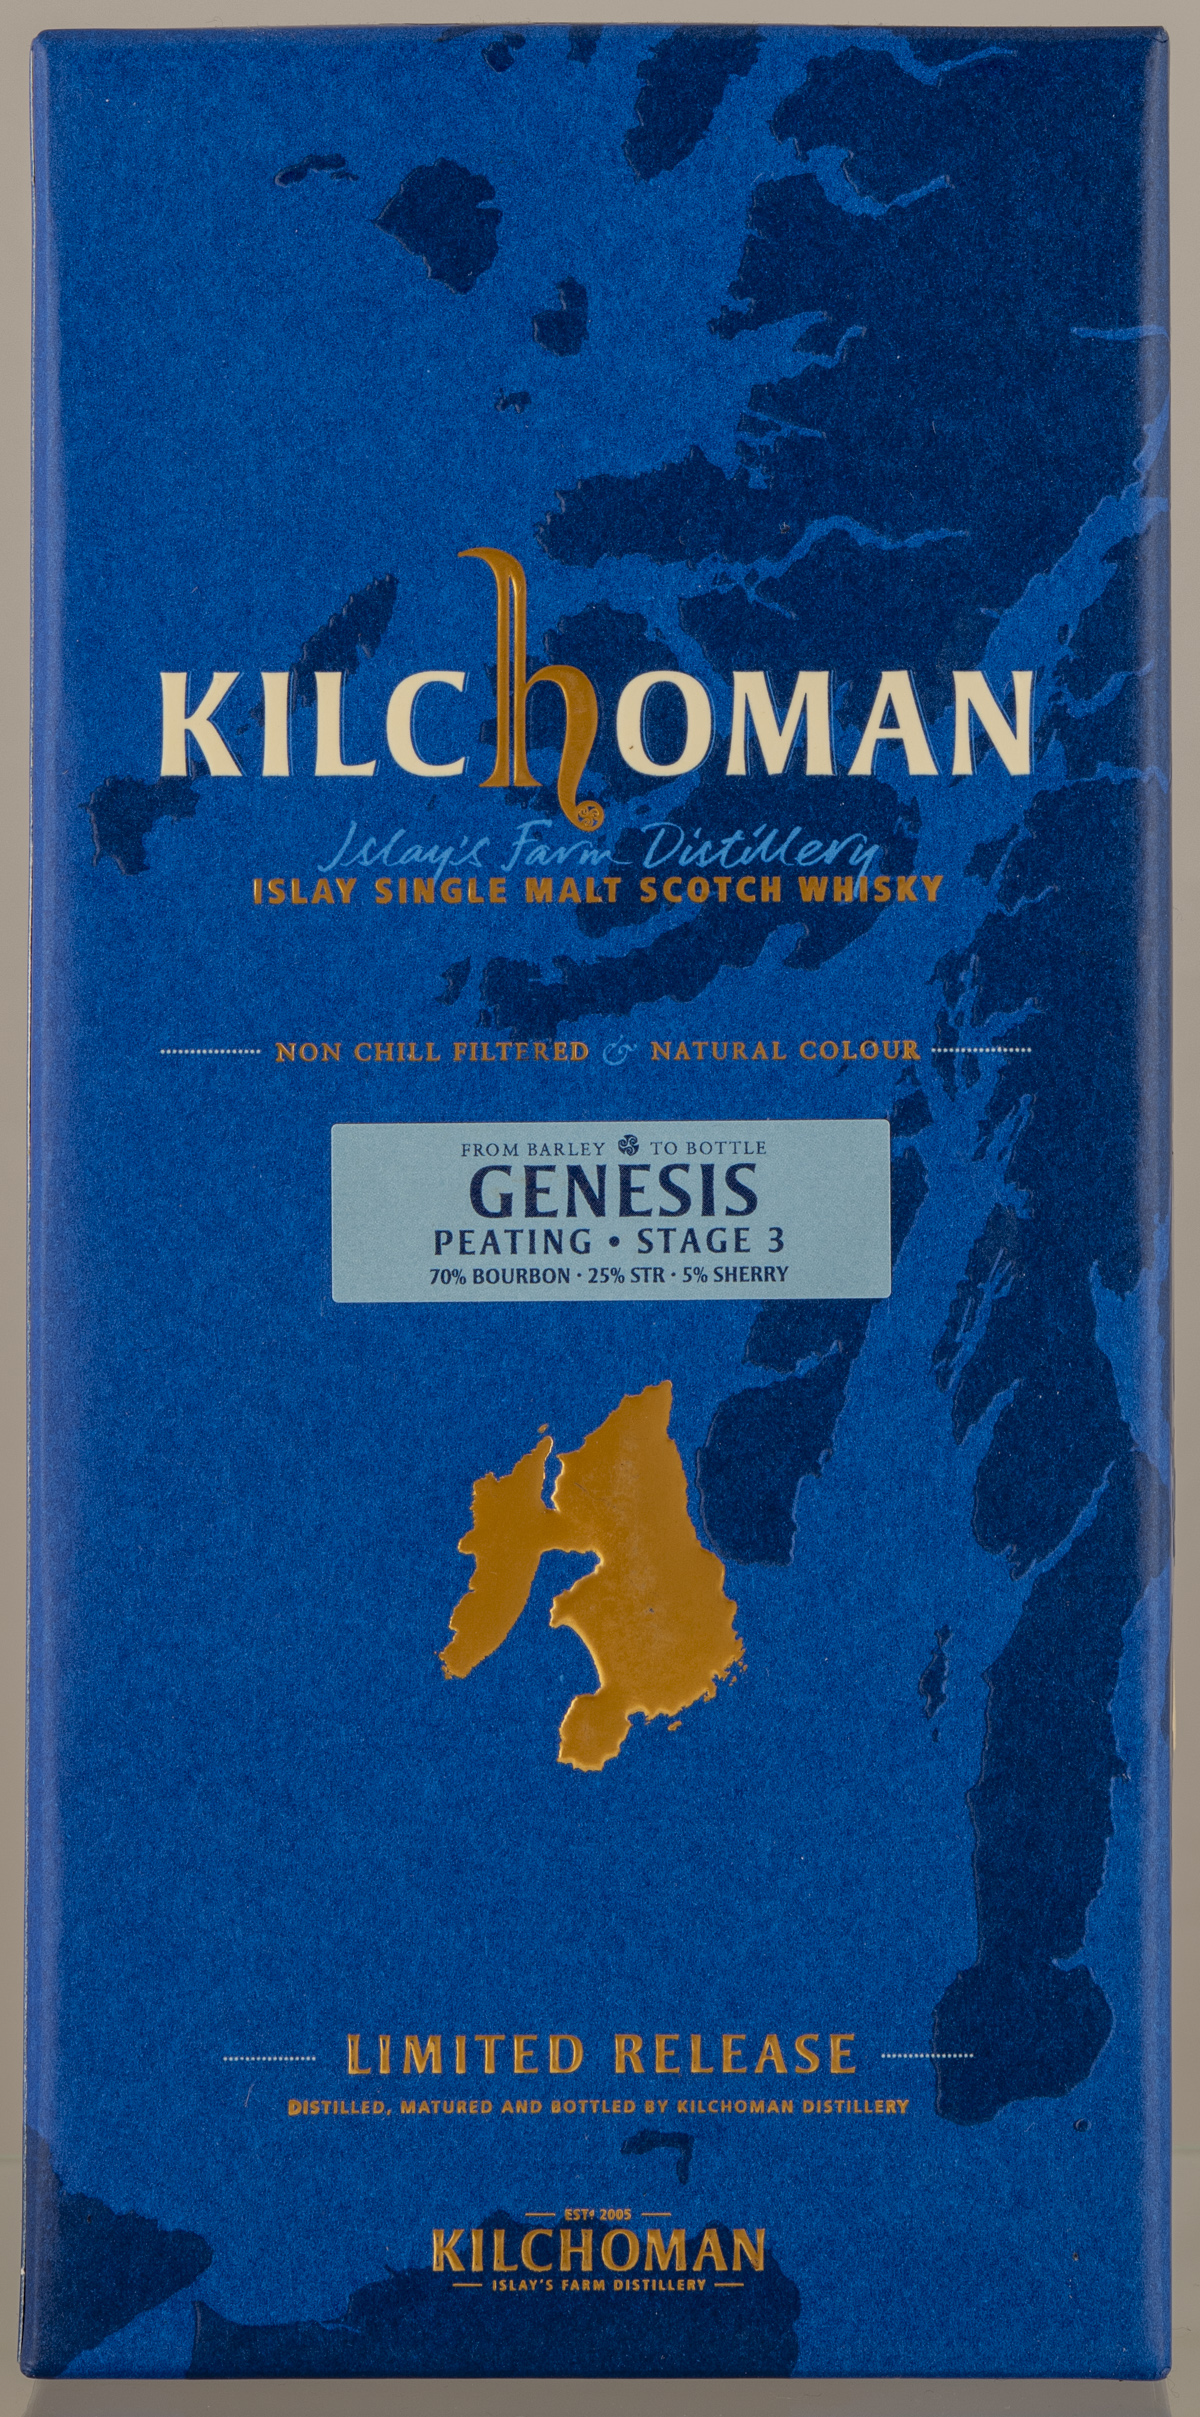 Billede: D85_8362 - Kilchoman Genesis Peating - Stage 3 - box front.jpg